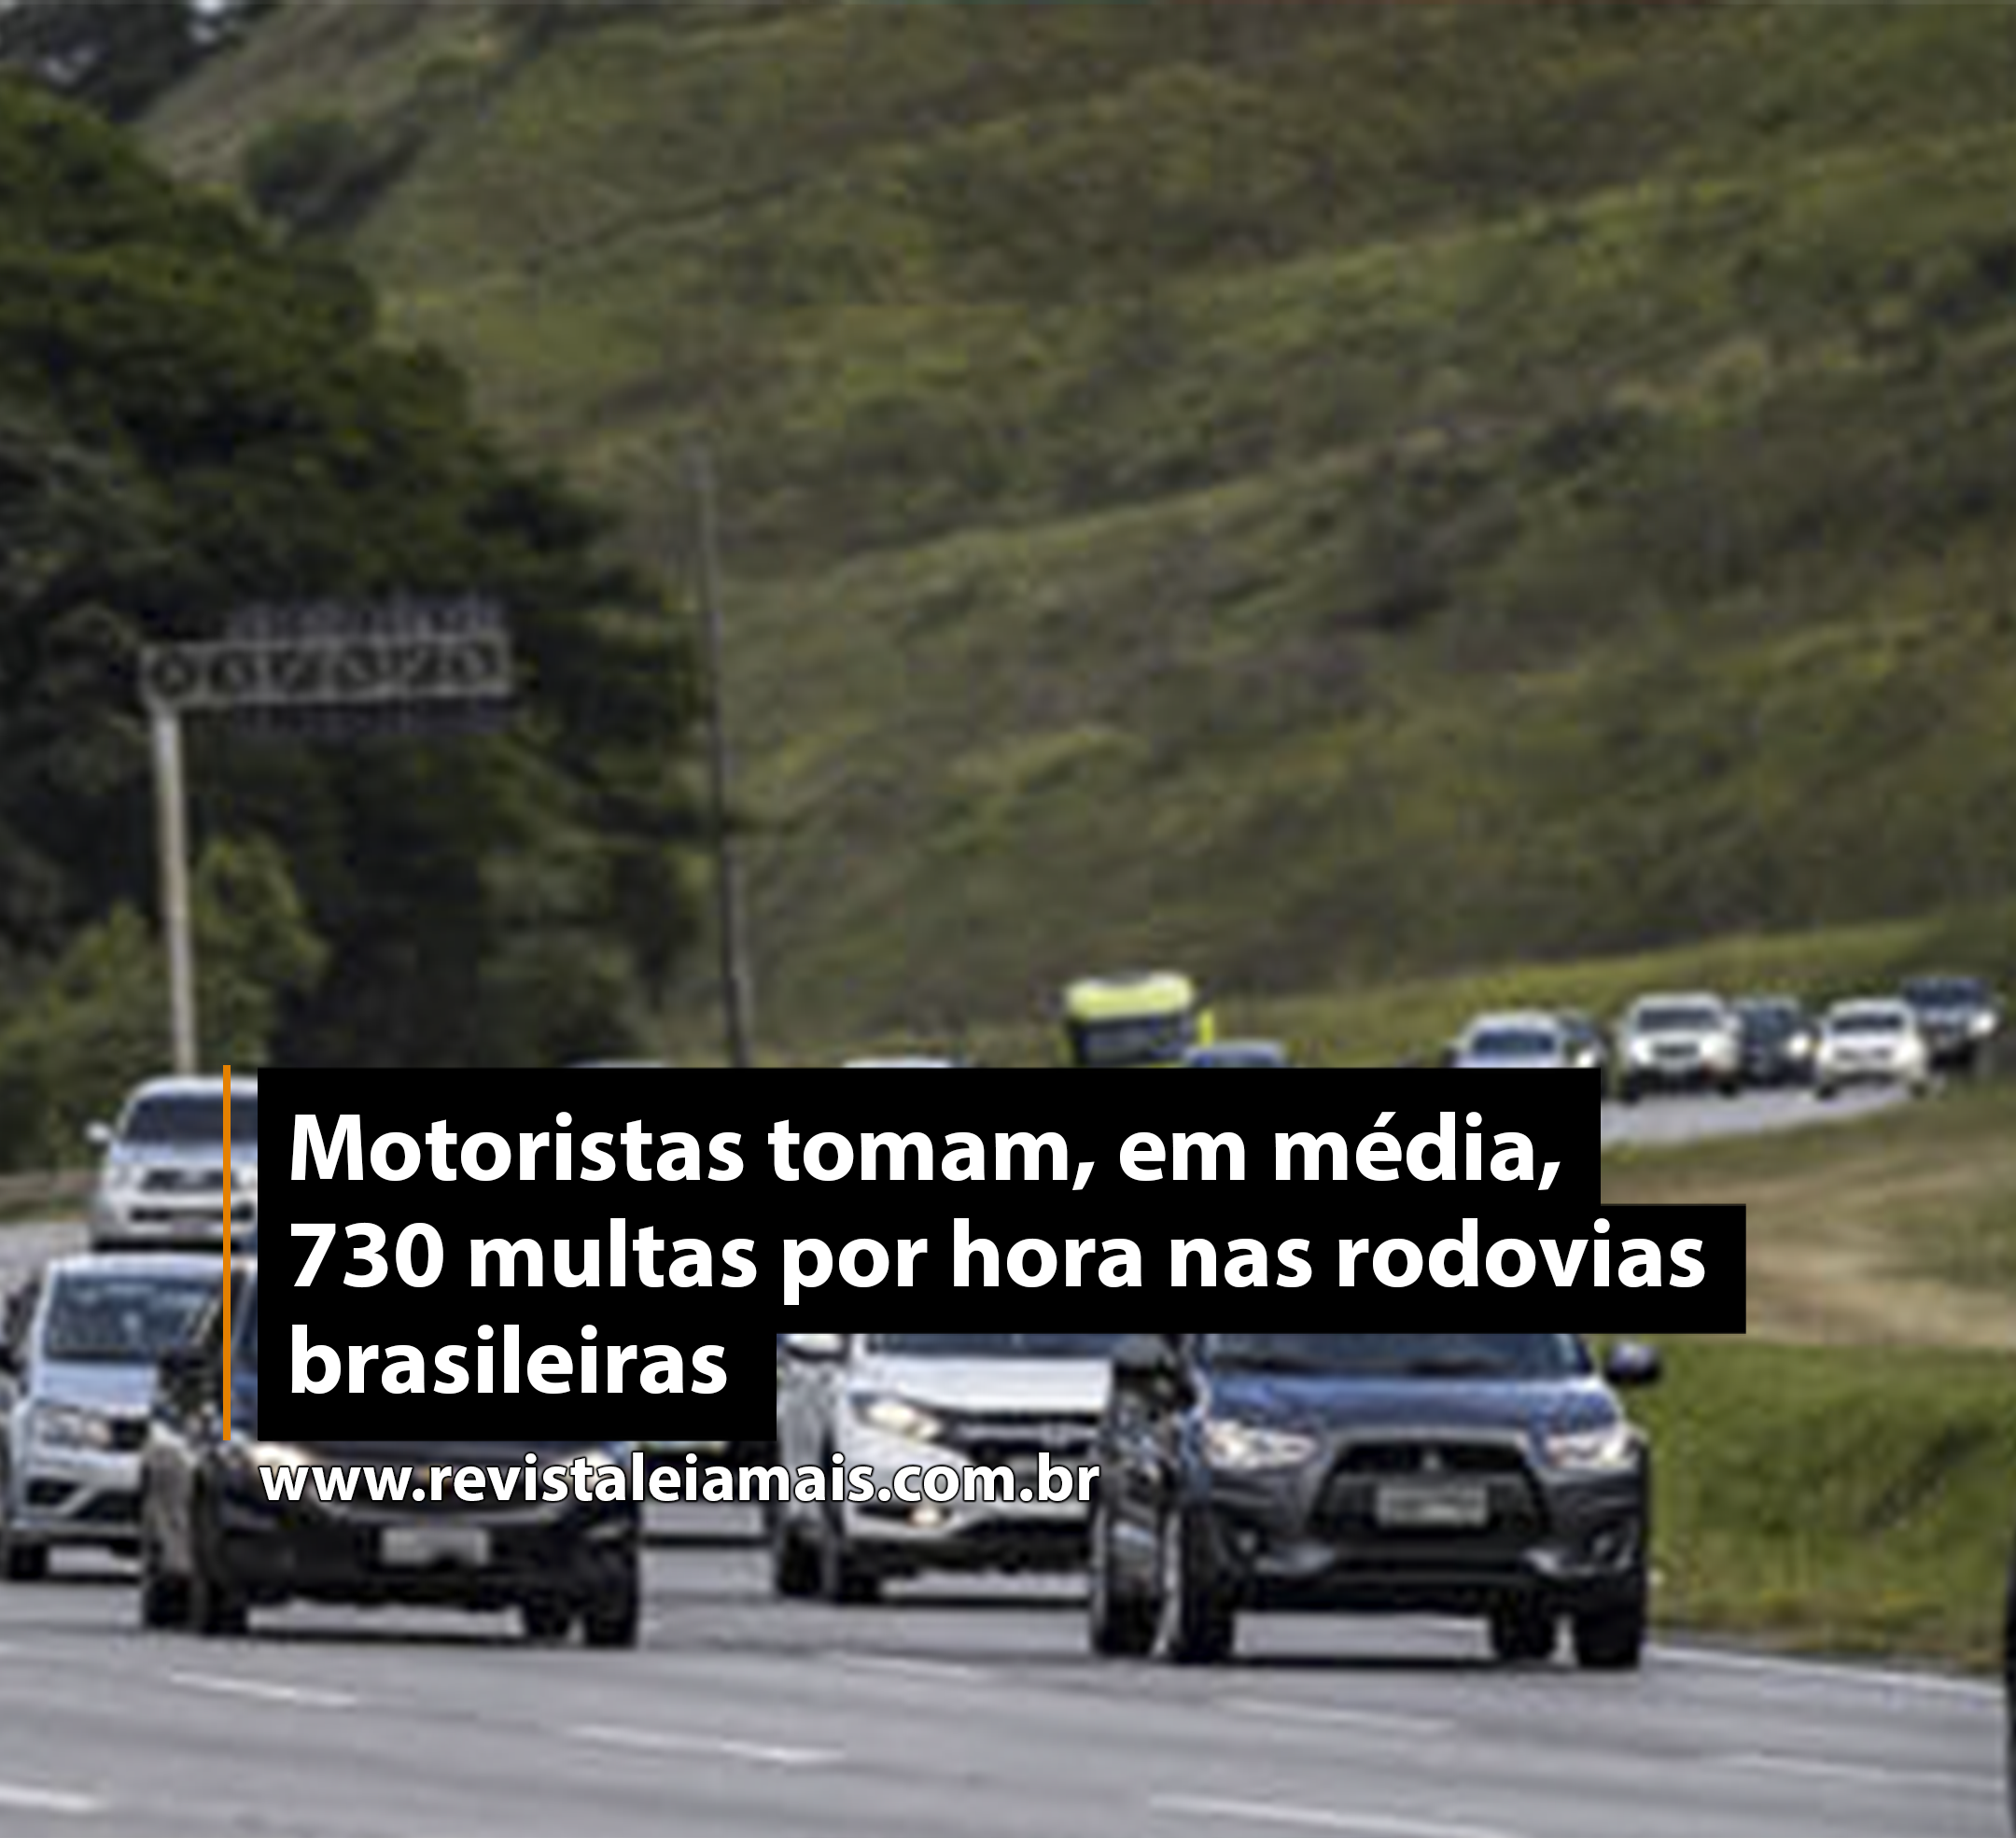 Motoristas tomam, em média, 730 multas por hora nas rodovias brasileiras